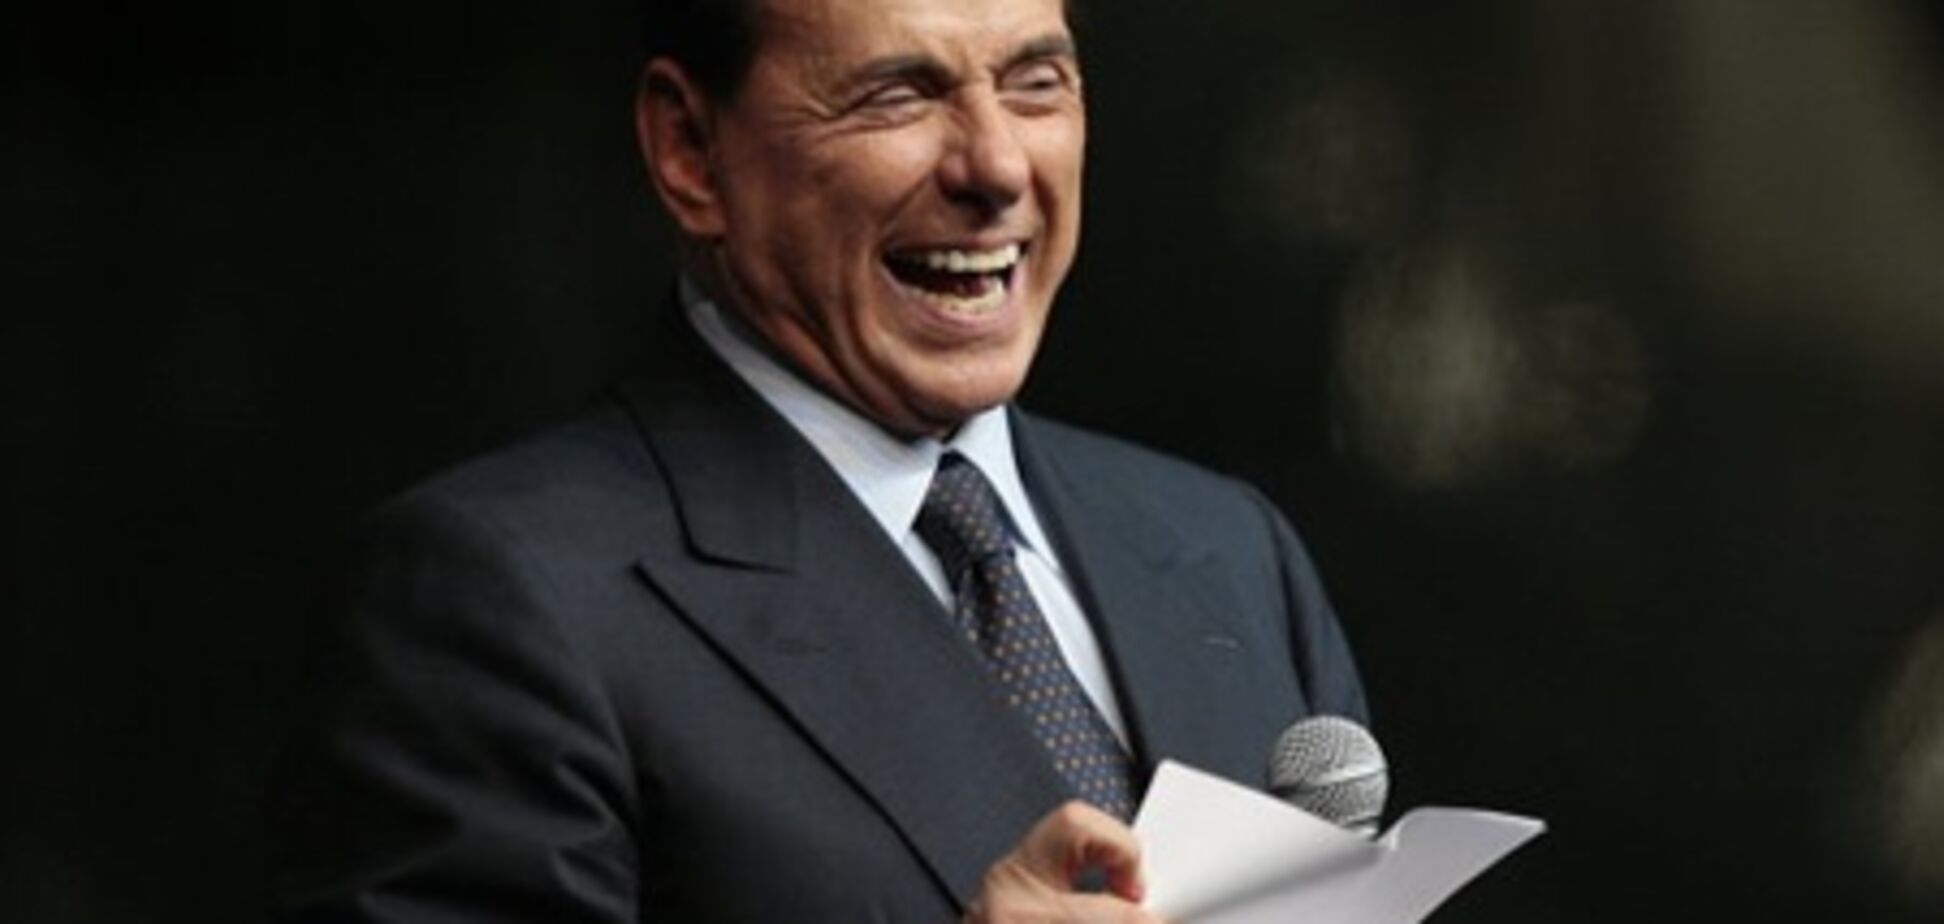 Берлускони: во внешней торговле нельзя без взяток